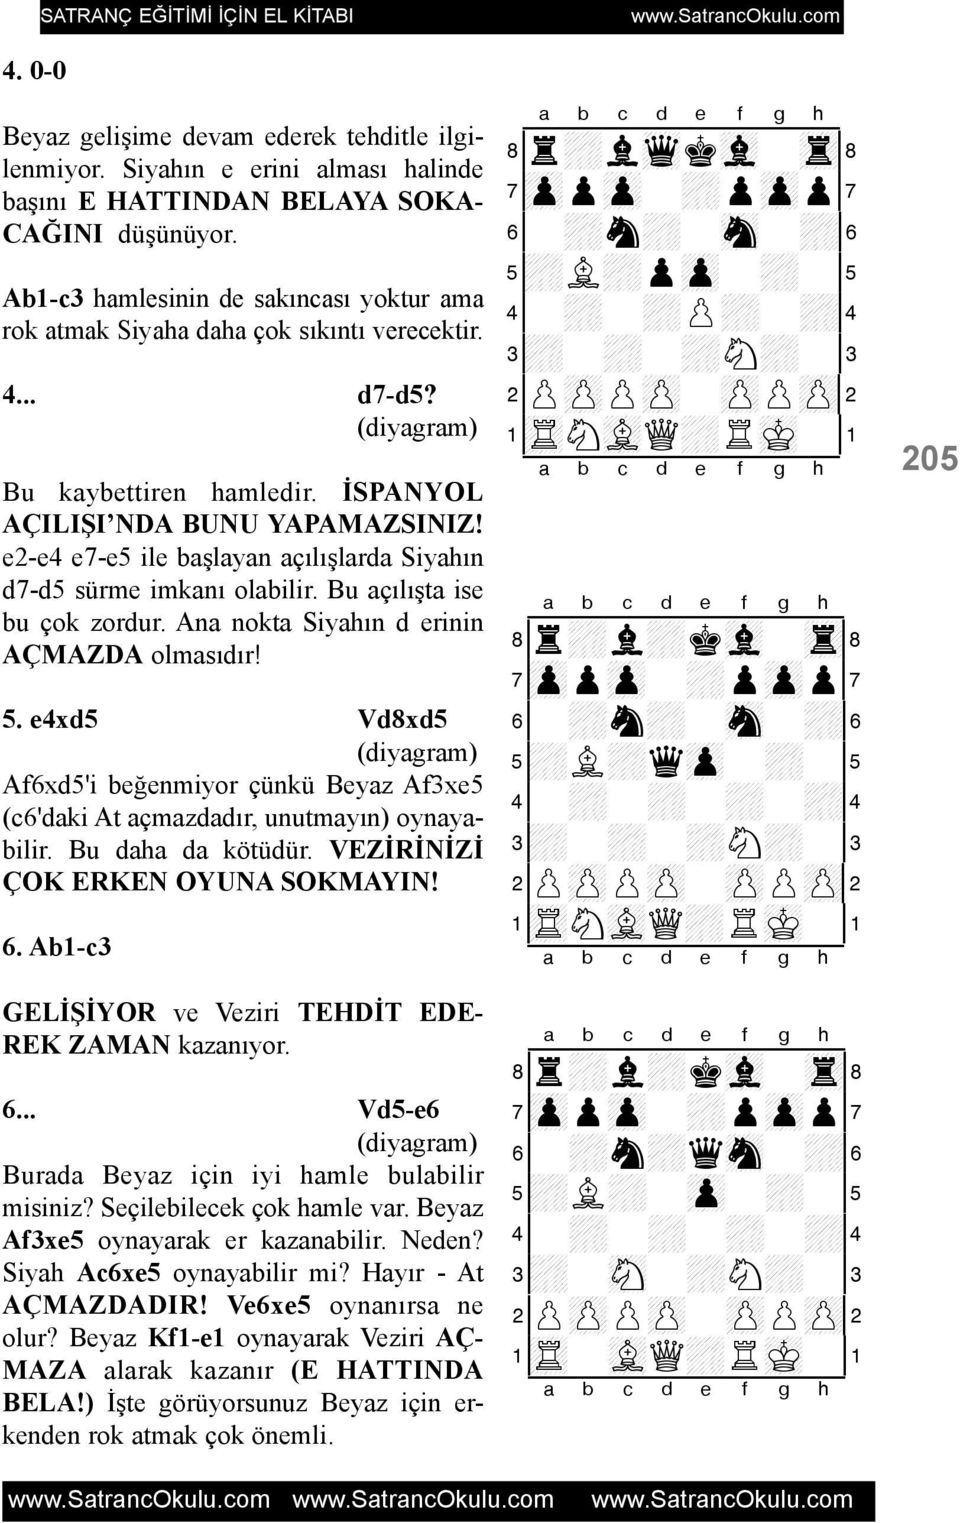 e2-e4 e7-e5 ile baþlayan açýlýþlarda Siyahýn d7-d5 sürme imkaný olabilir. Bu açýlýþta ise bu çok zordur. Ana nokta Siyahýn d erinin AÇMAZDA olmasýdýr! 5.